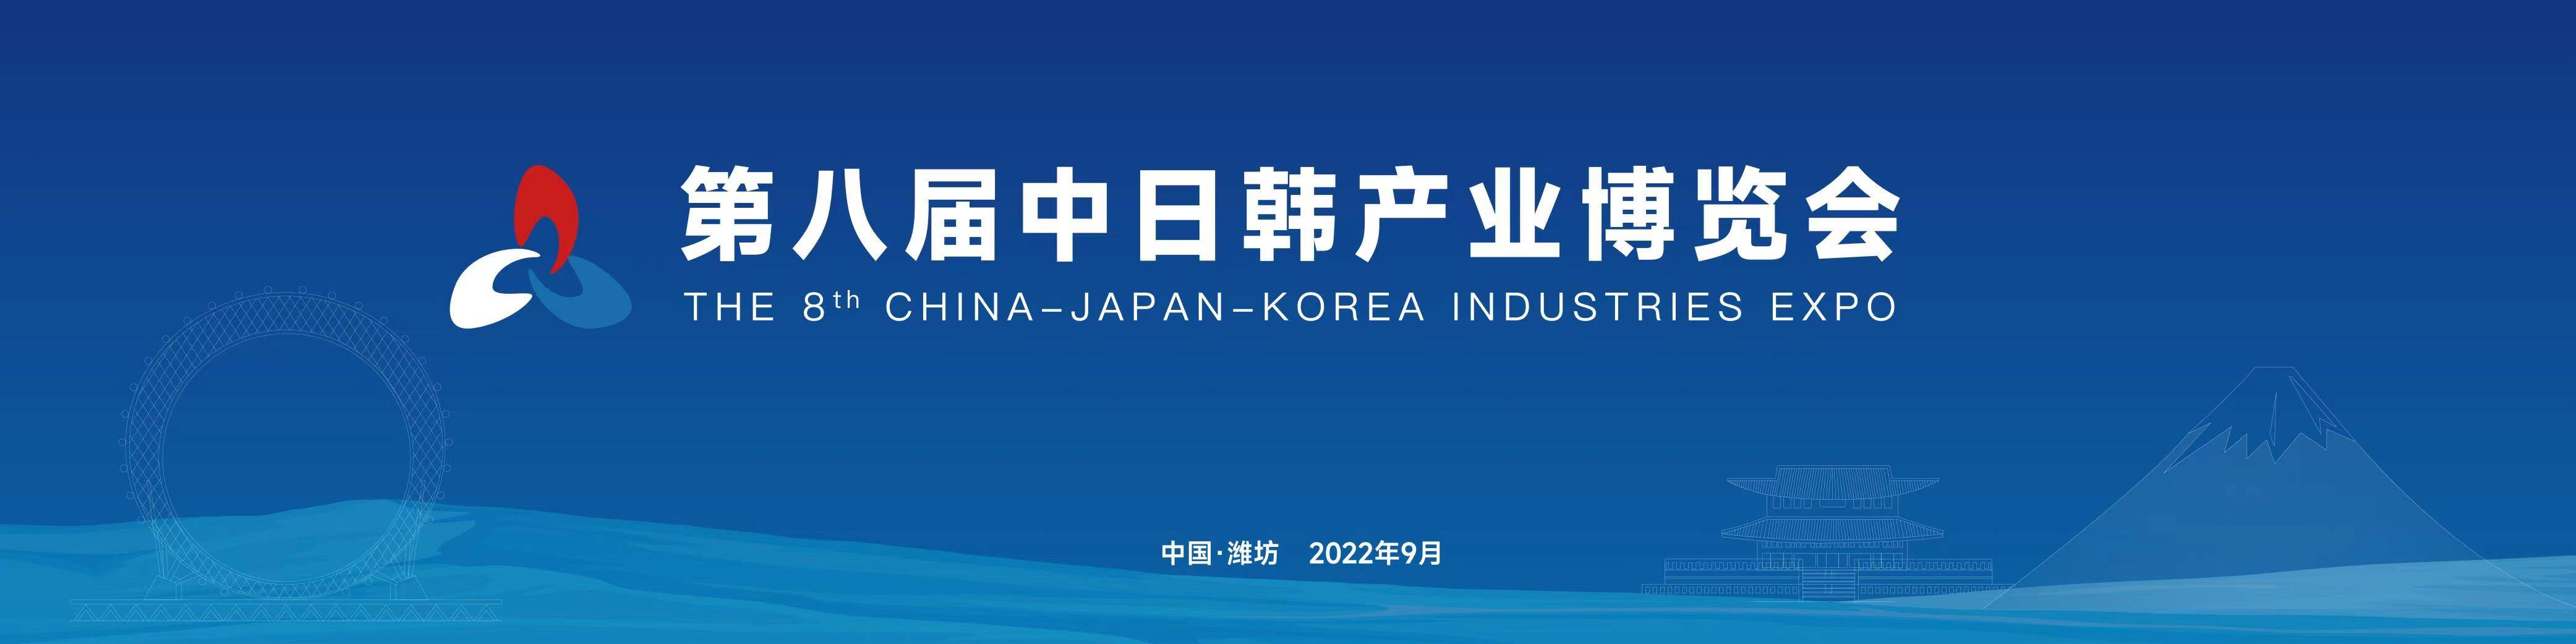 第八届中日韩产业博览会开幕 中日韩三国嘉宾跨海连线共享发展机遇互利共赢